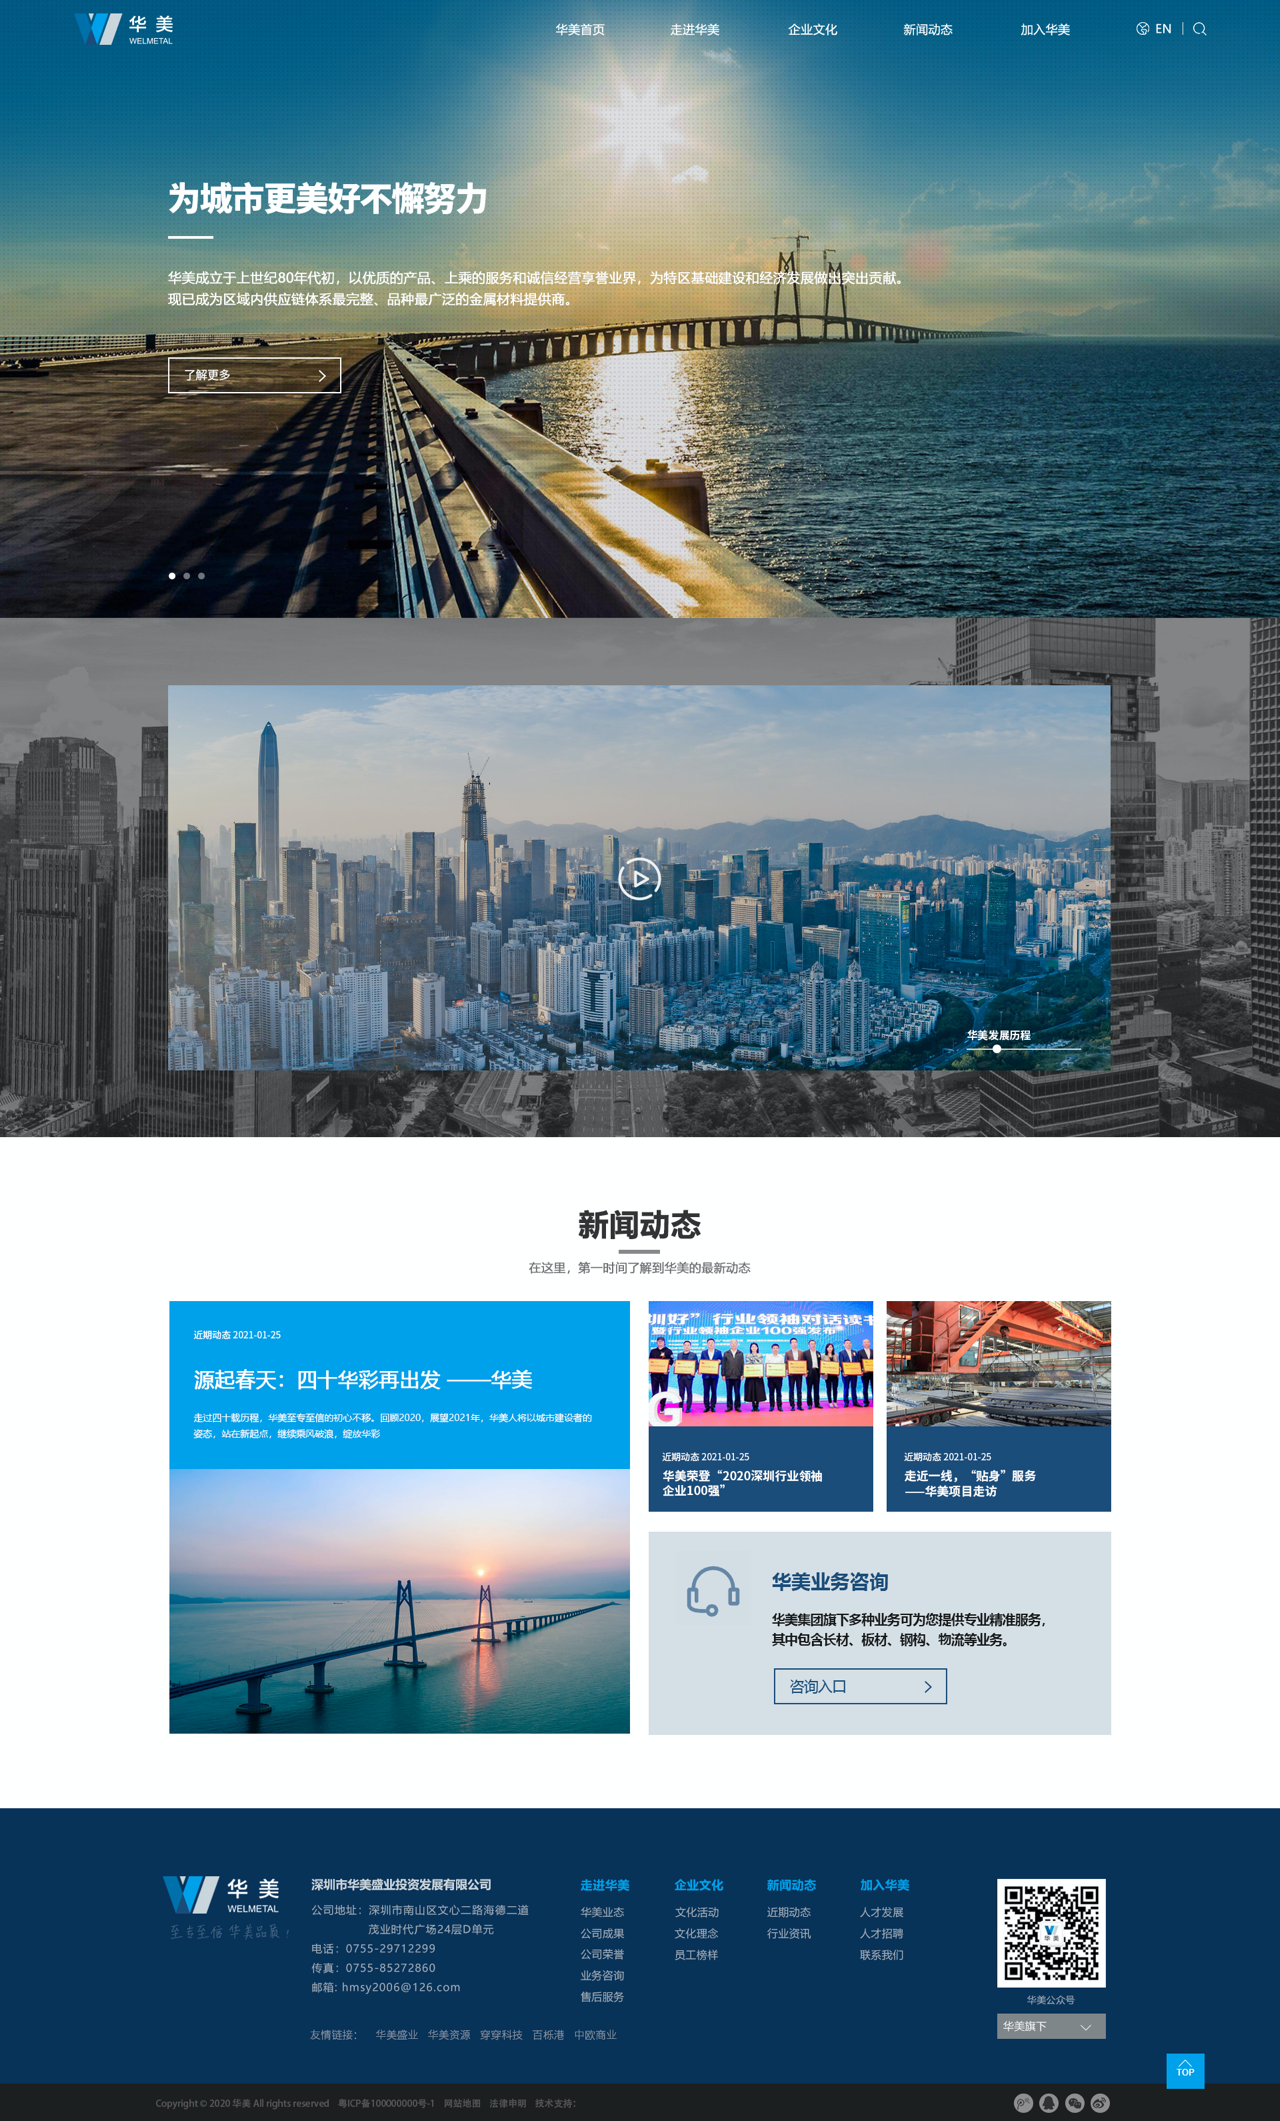 深圳华美科技官网升级,官网改版,官网建设,营销型网站建设公司13923486325